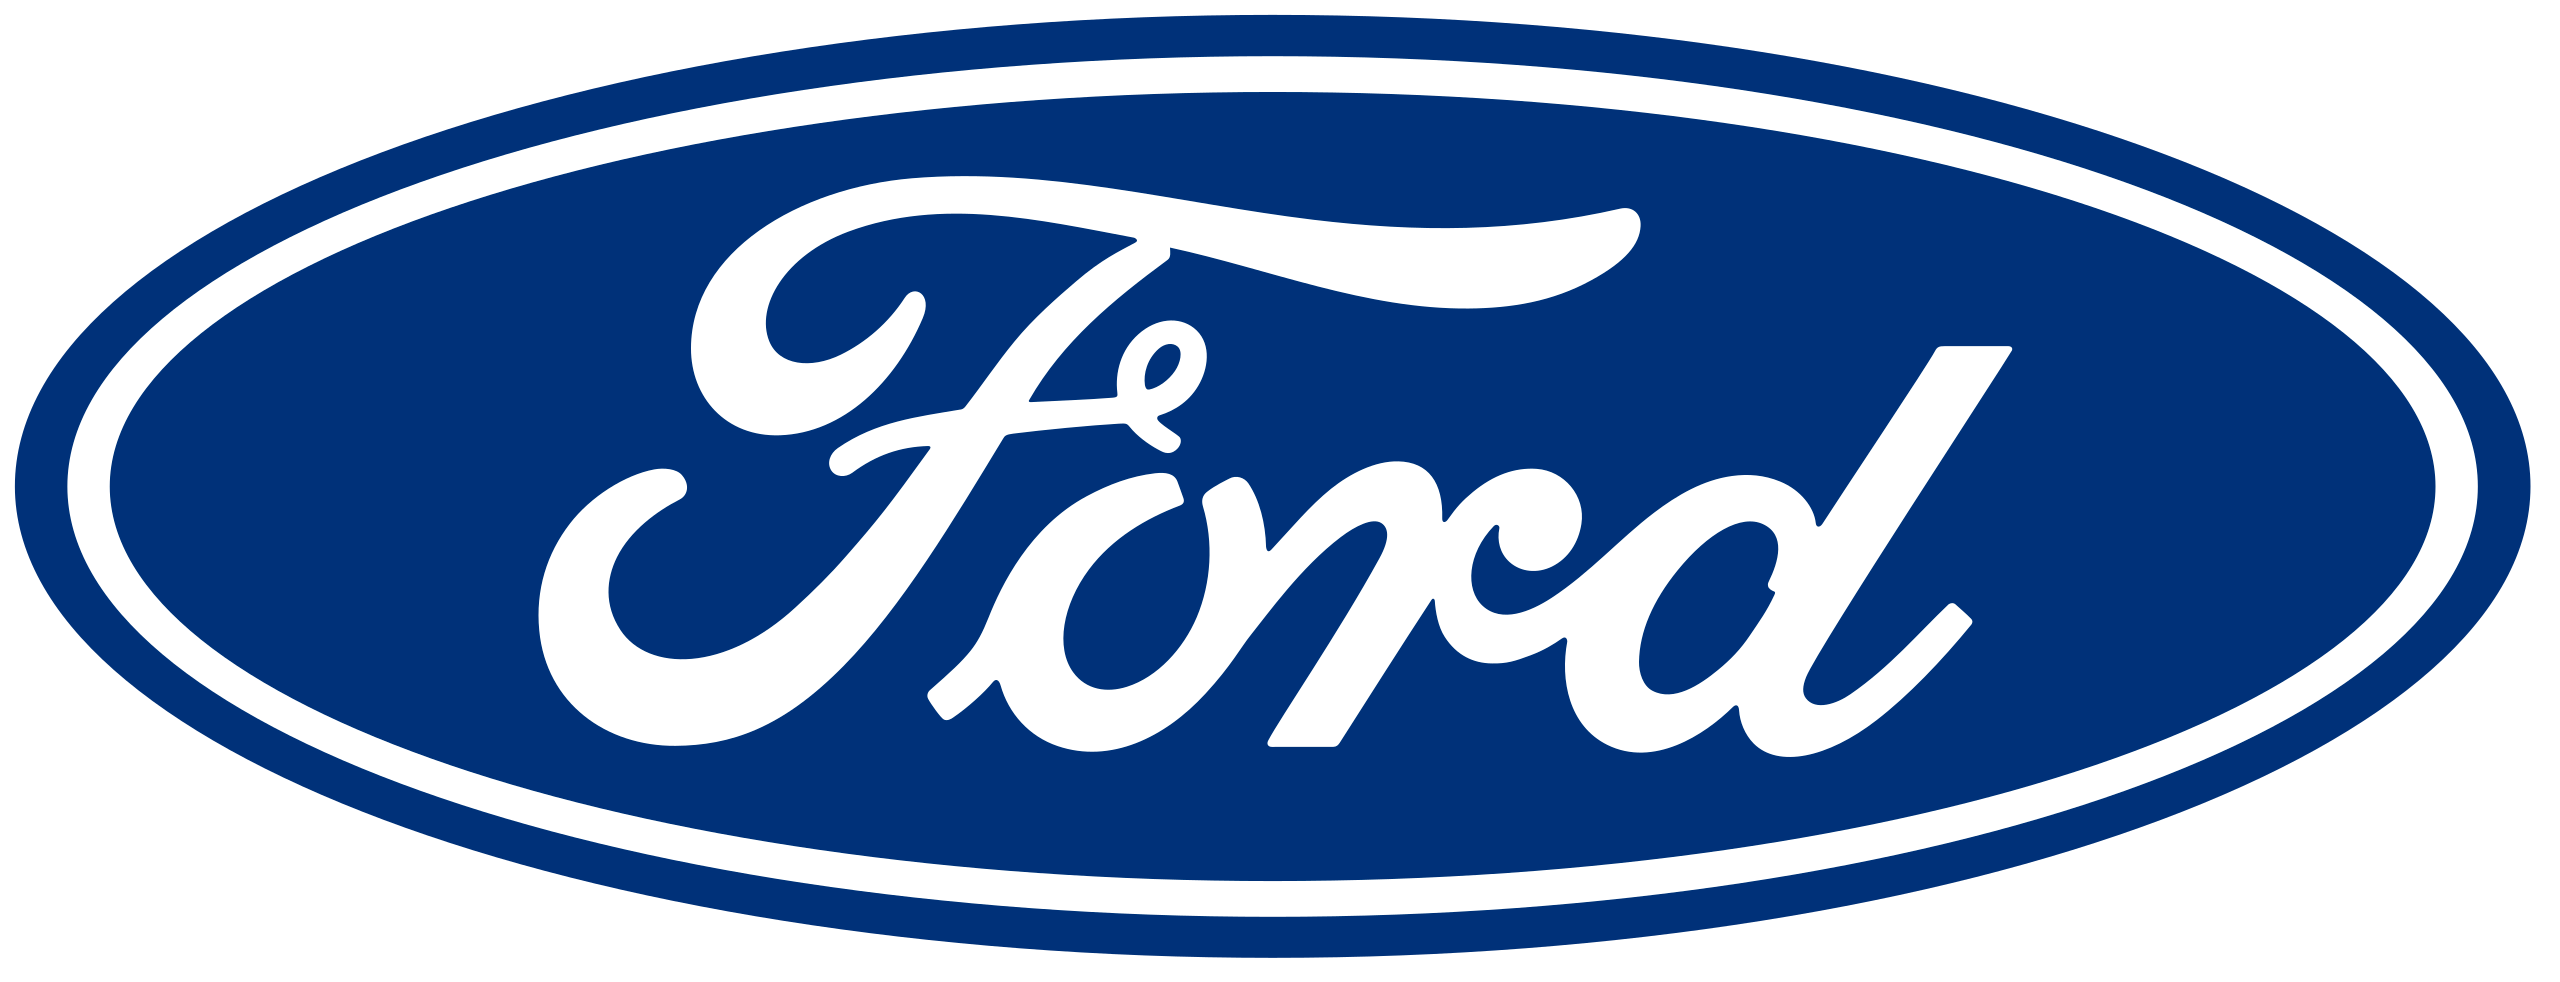 Ford’s logo